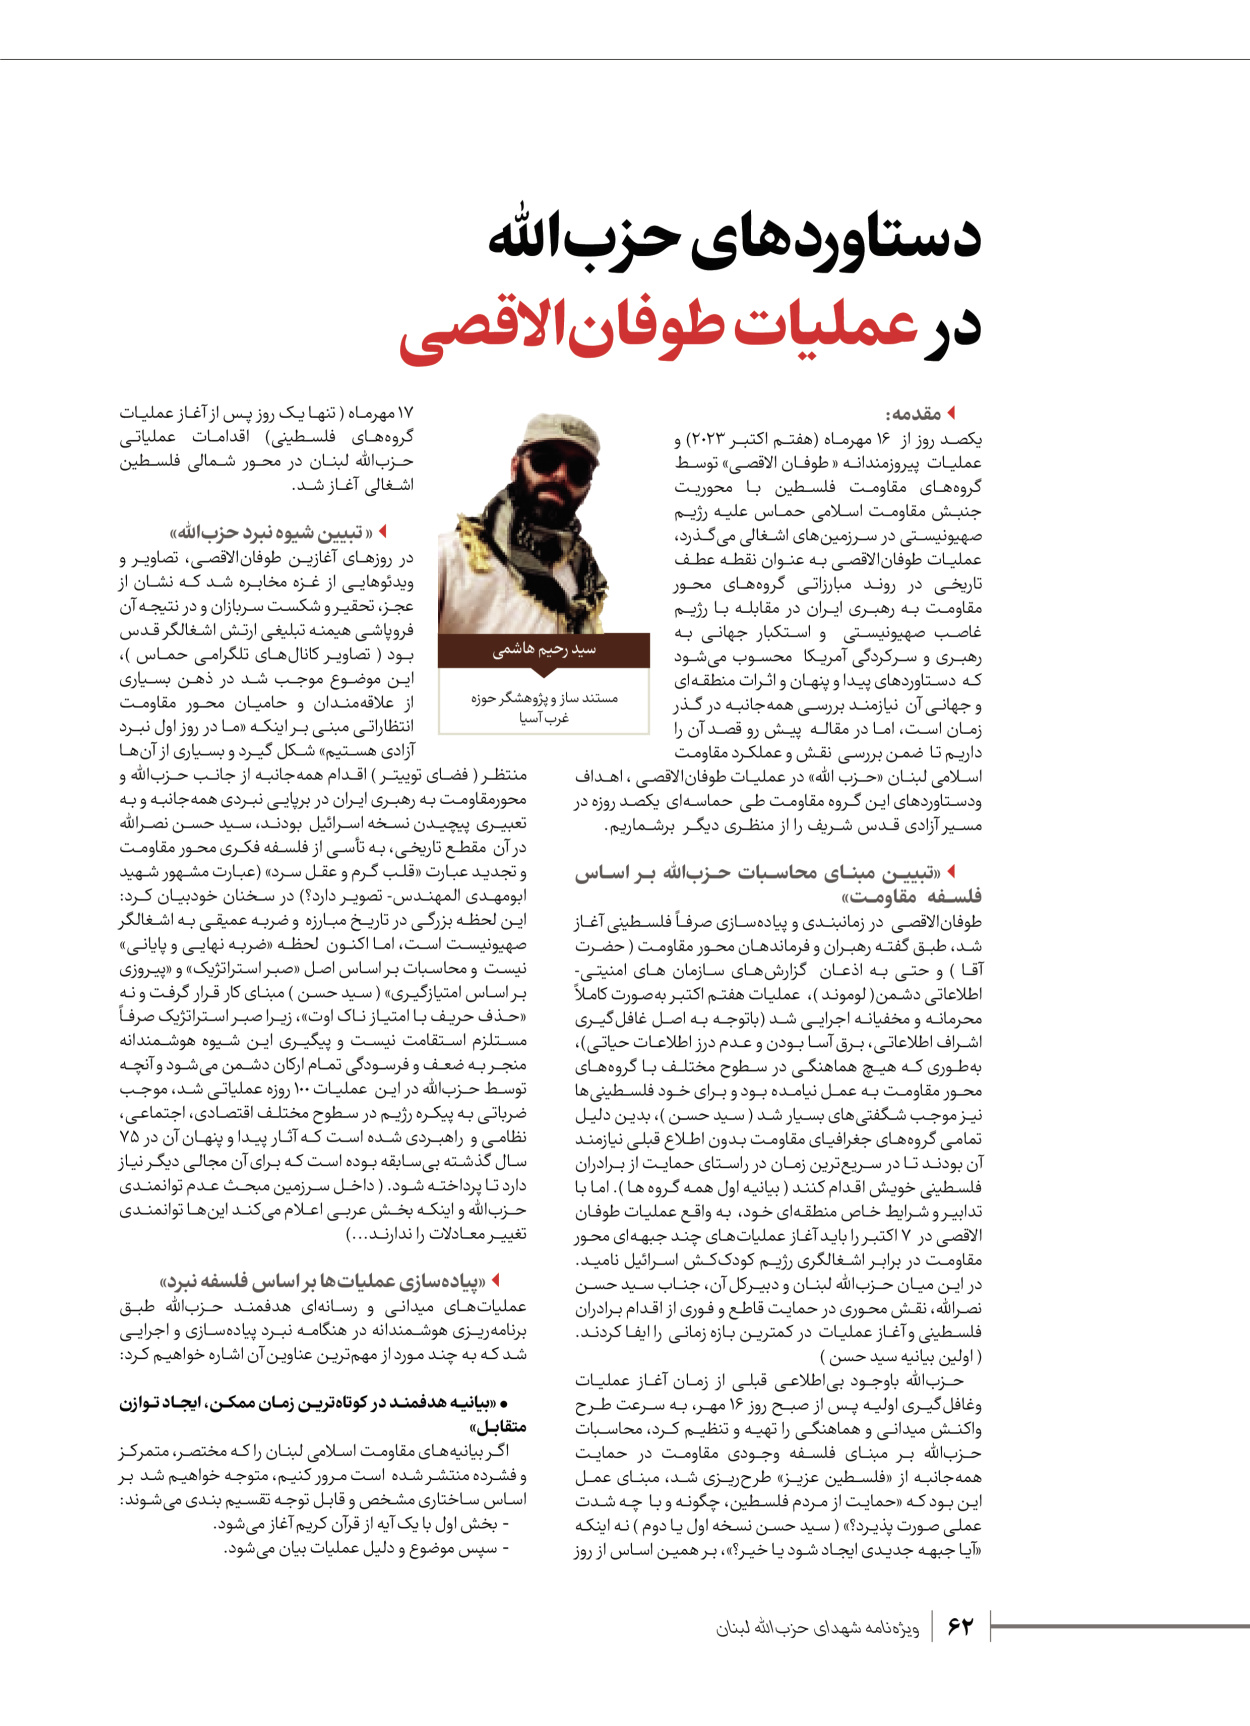 روزنامه ایران - ویژه نامه شهدای قدس ۶ - ۲۵ فروردین ۱۴۰۳ - صفحه ۶۲